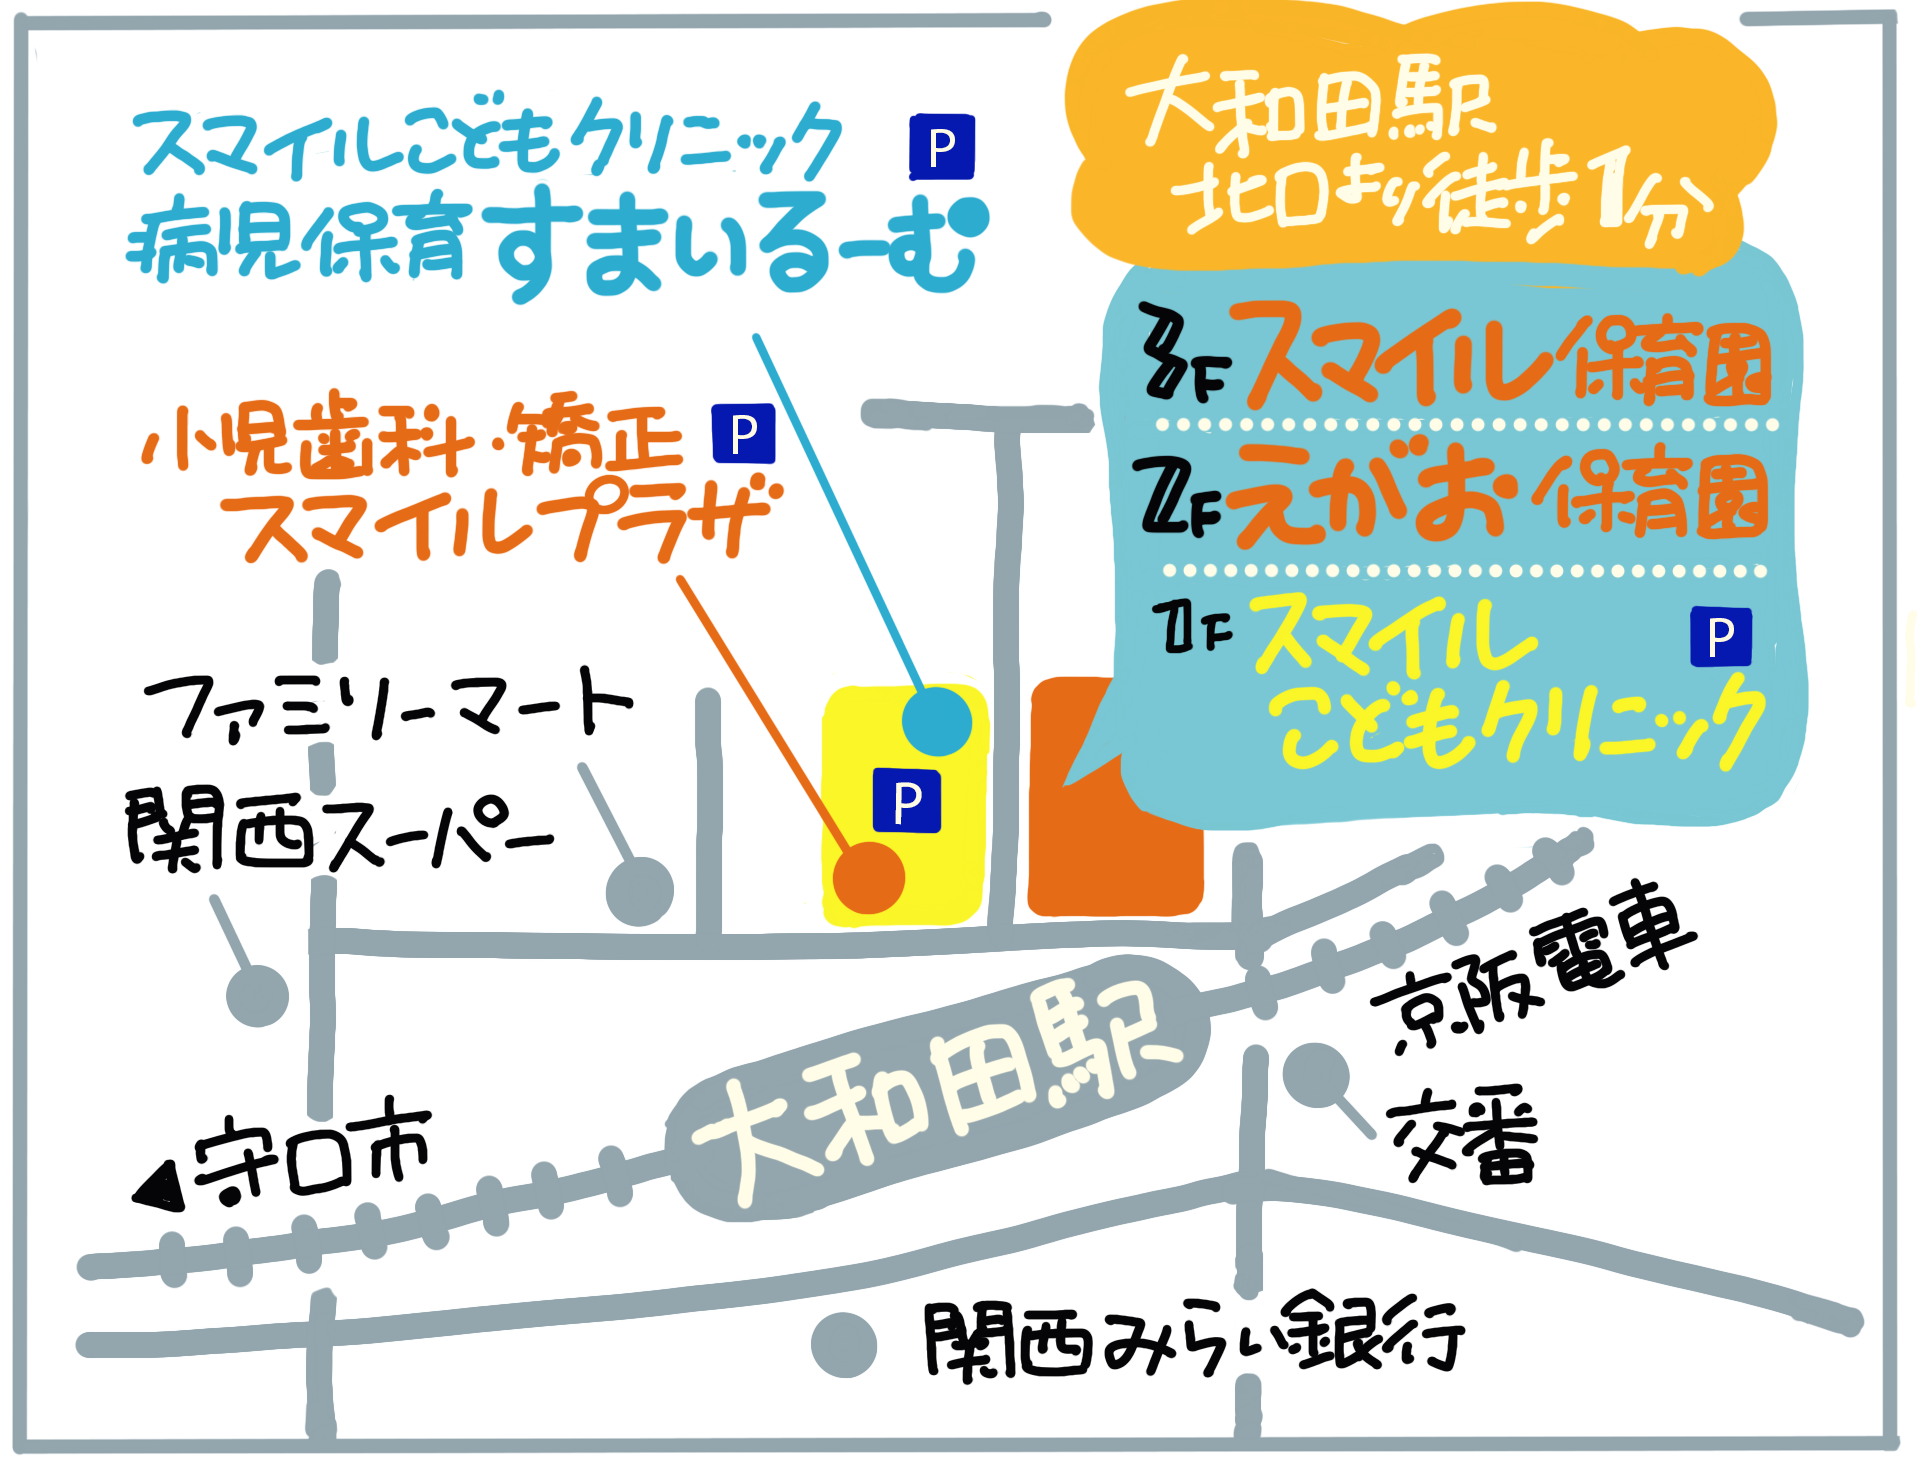 門真市えがお保育園は、大和田駅徒歩すぐで育児しながら働くママを応援します！隣には、小児歯科スマイルプラザもあり、安心して預けれる保育園です。